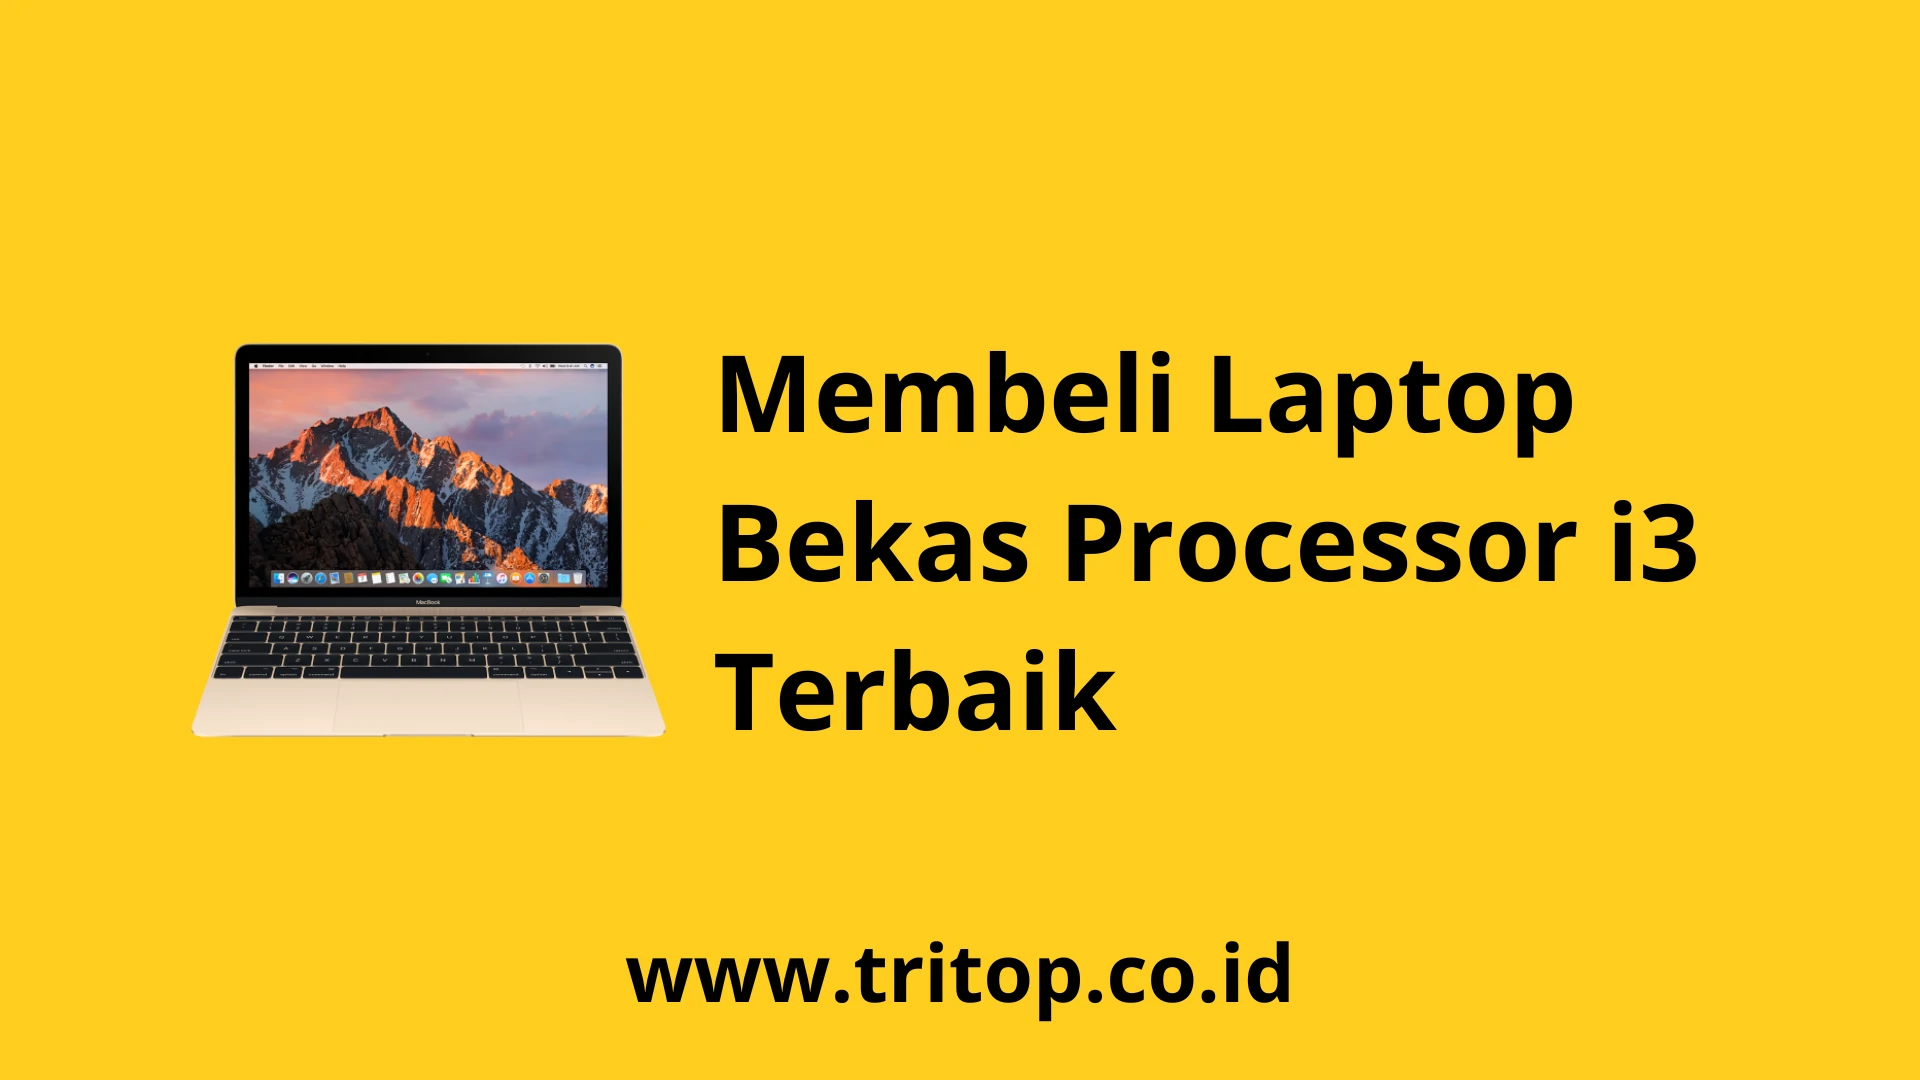 Laptop Bekas i3 www.tritop.co.id